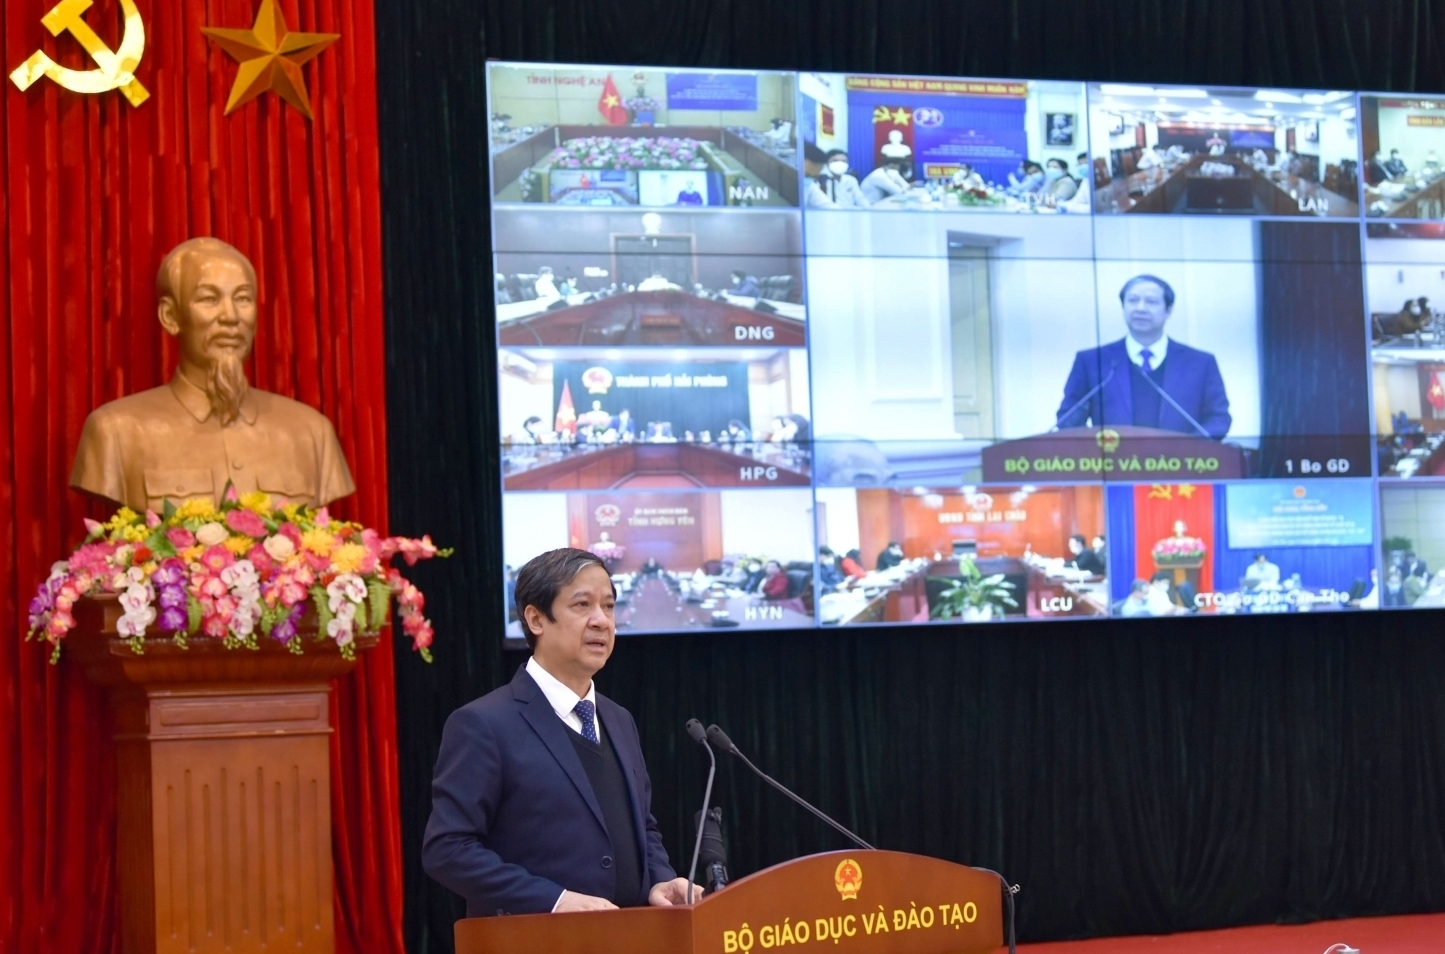 Bộ trưởng Nguyễn Kim Sơn: Cần tránh quan điểm coi trường chuyên là để có học sinh giỏi và các giải thưởng